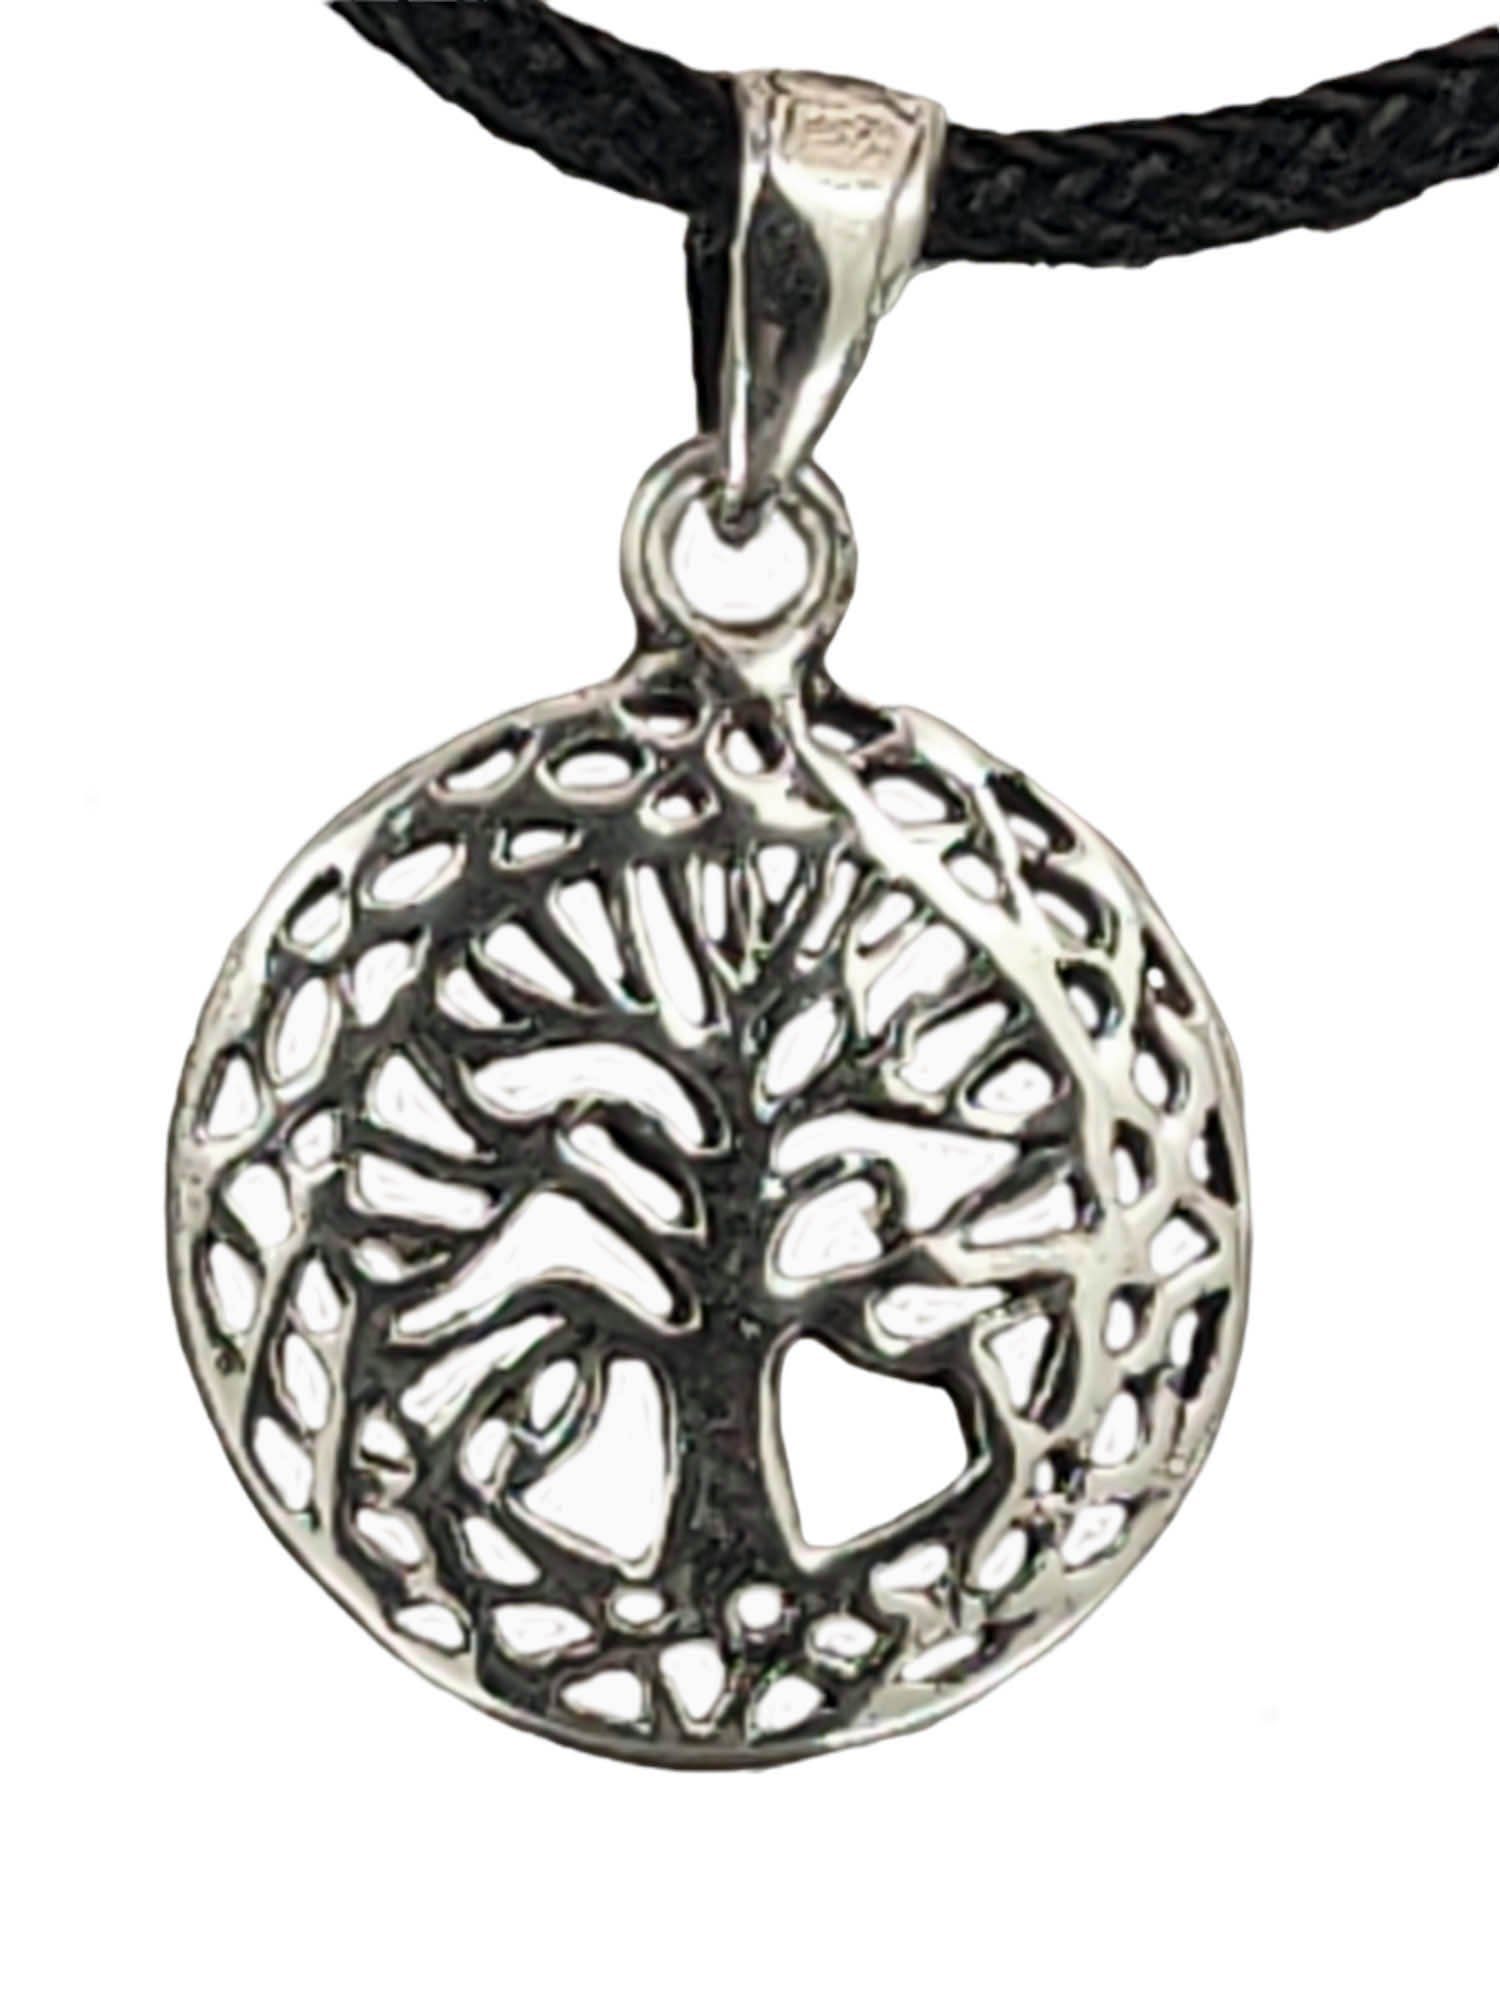 Leather of Anhänger Silber Weltenbaum Baum Kiss Lebensbaum 925 Keltenknoten Kettenanhänger Yggdrasil